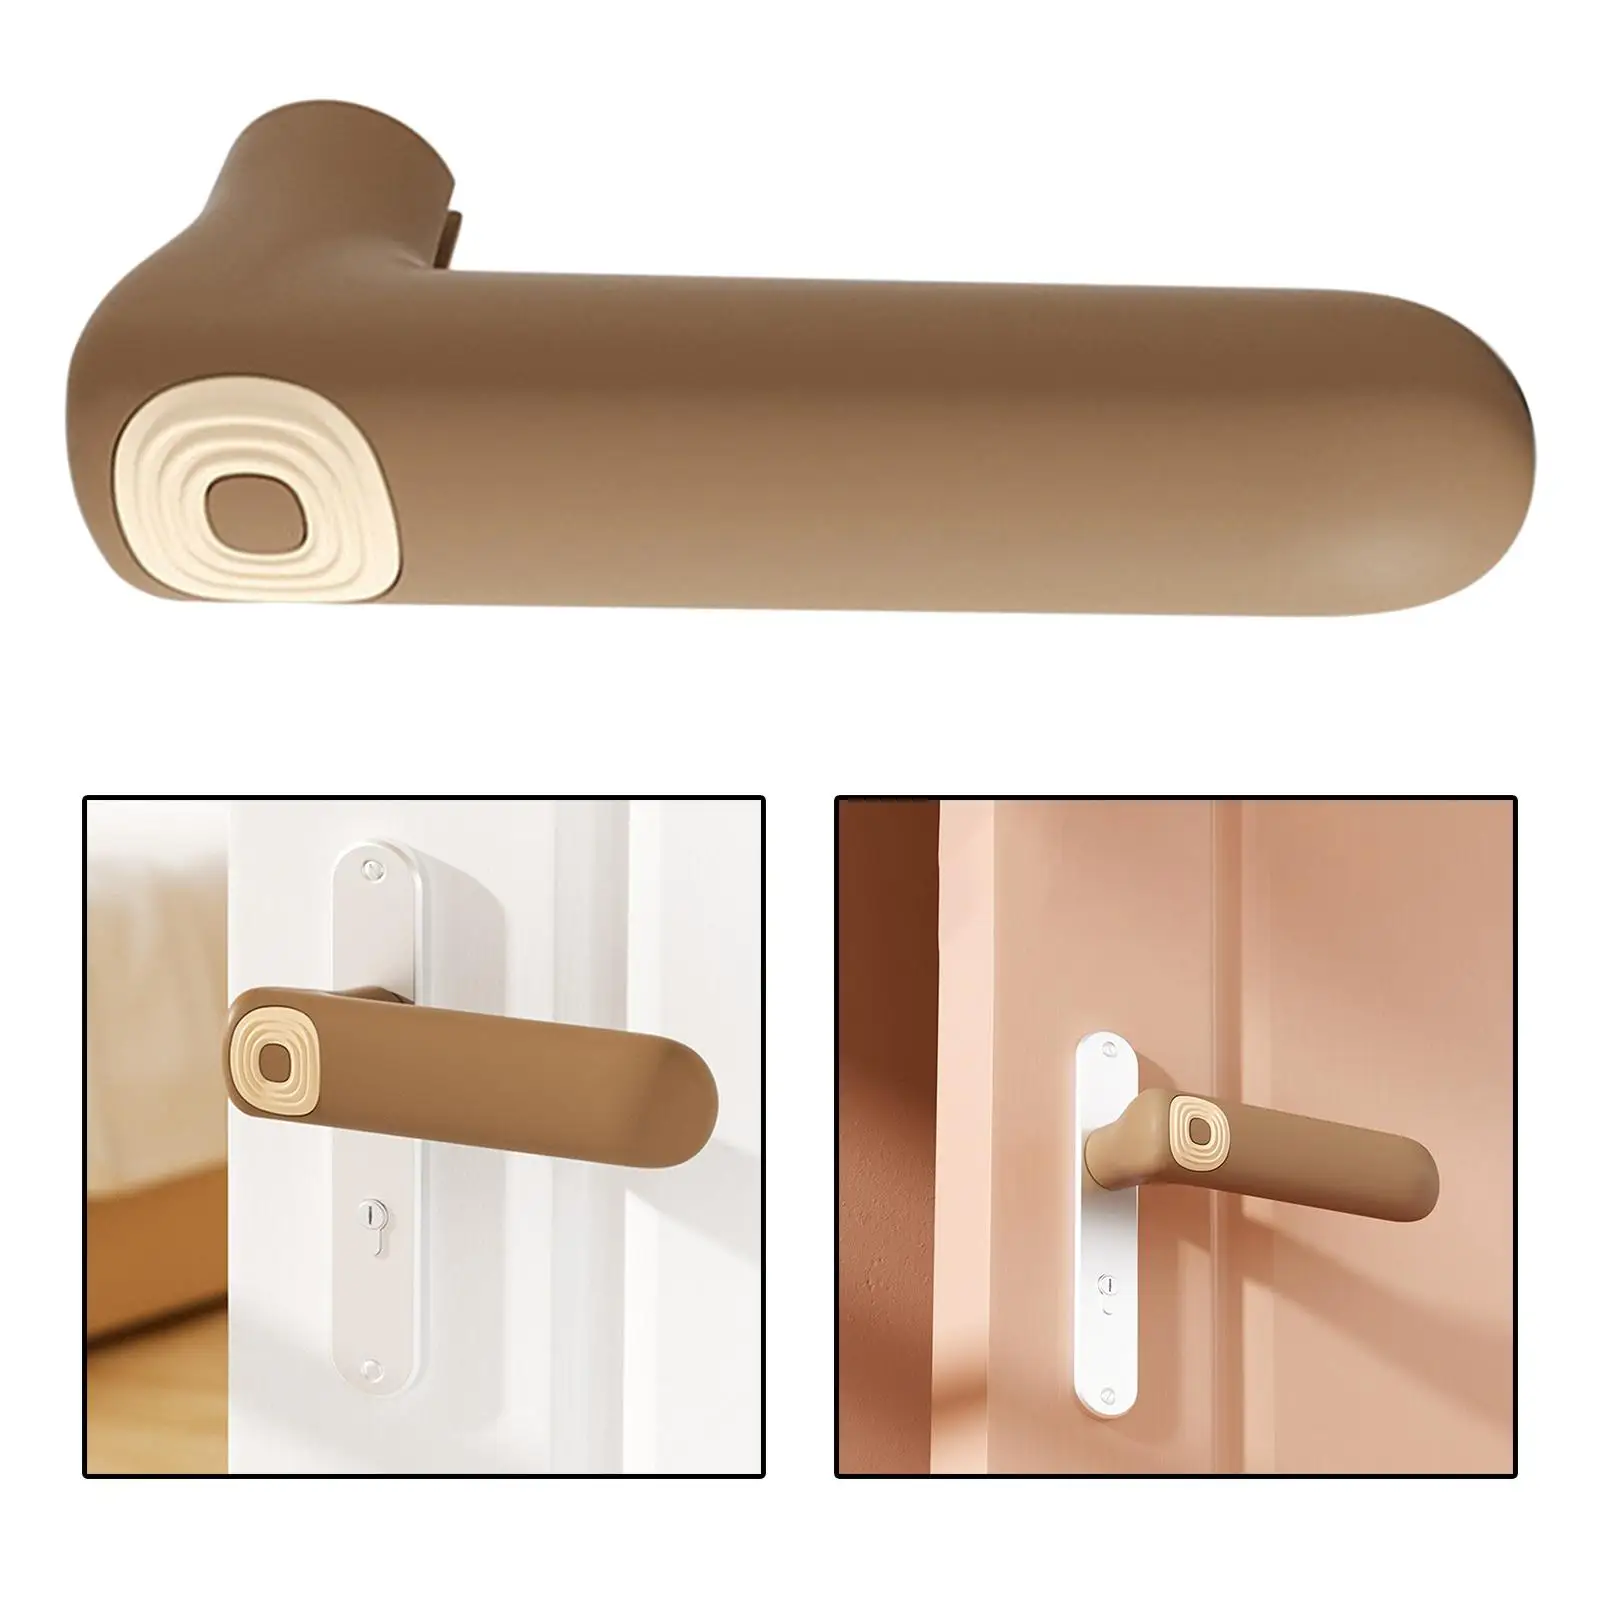 Silicone handle for door Protective Cover, Door Knob Cover, handle for door Protect Sleeve for Home Bedroom Living Room